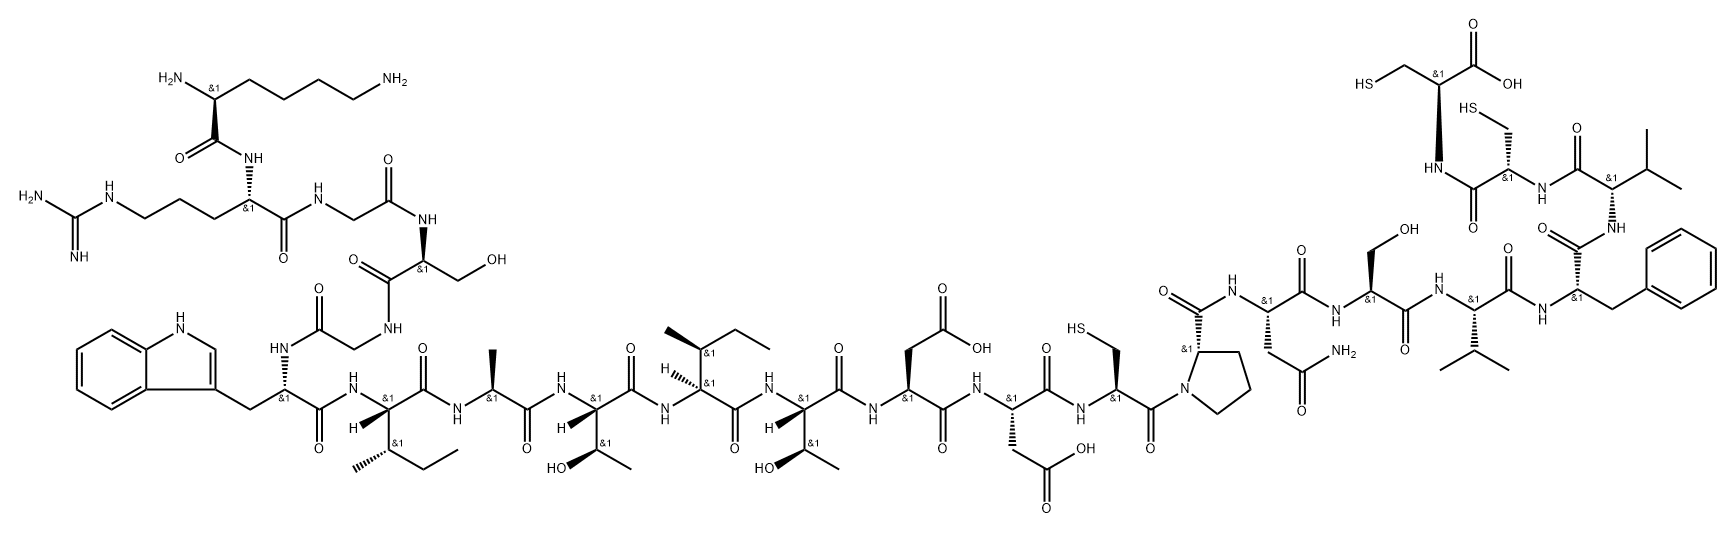 salivaricin A Structure